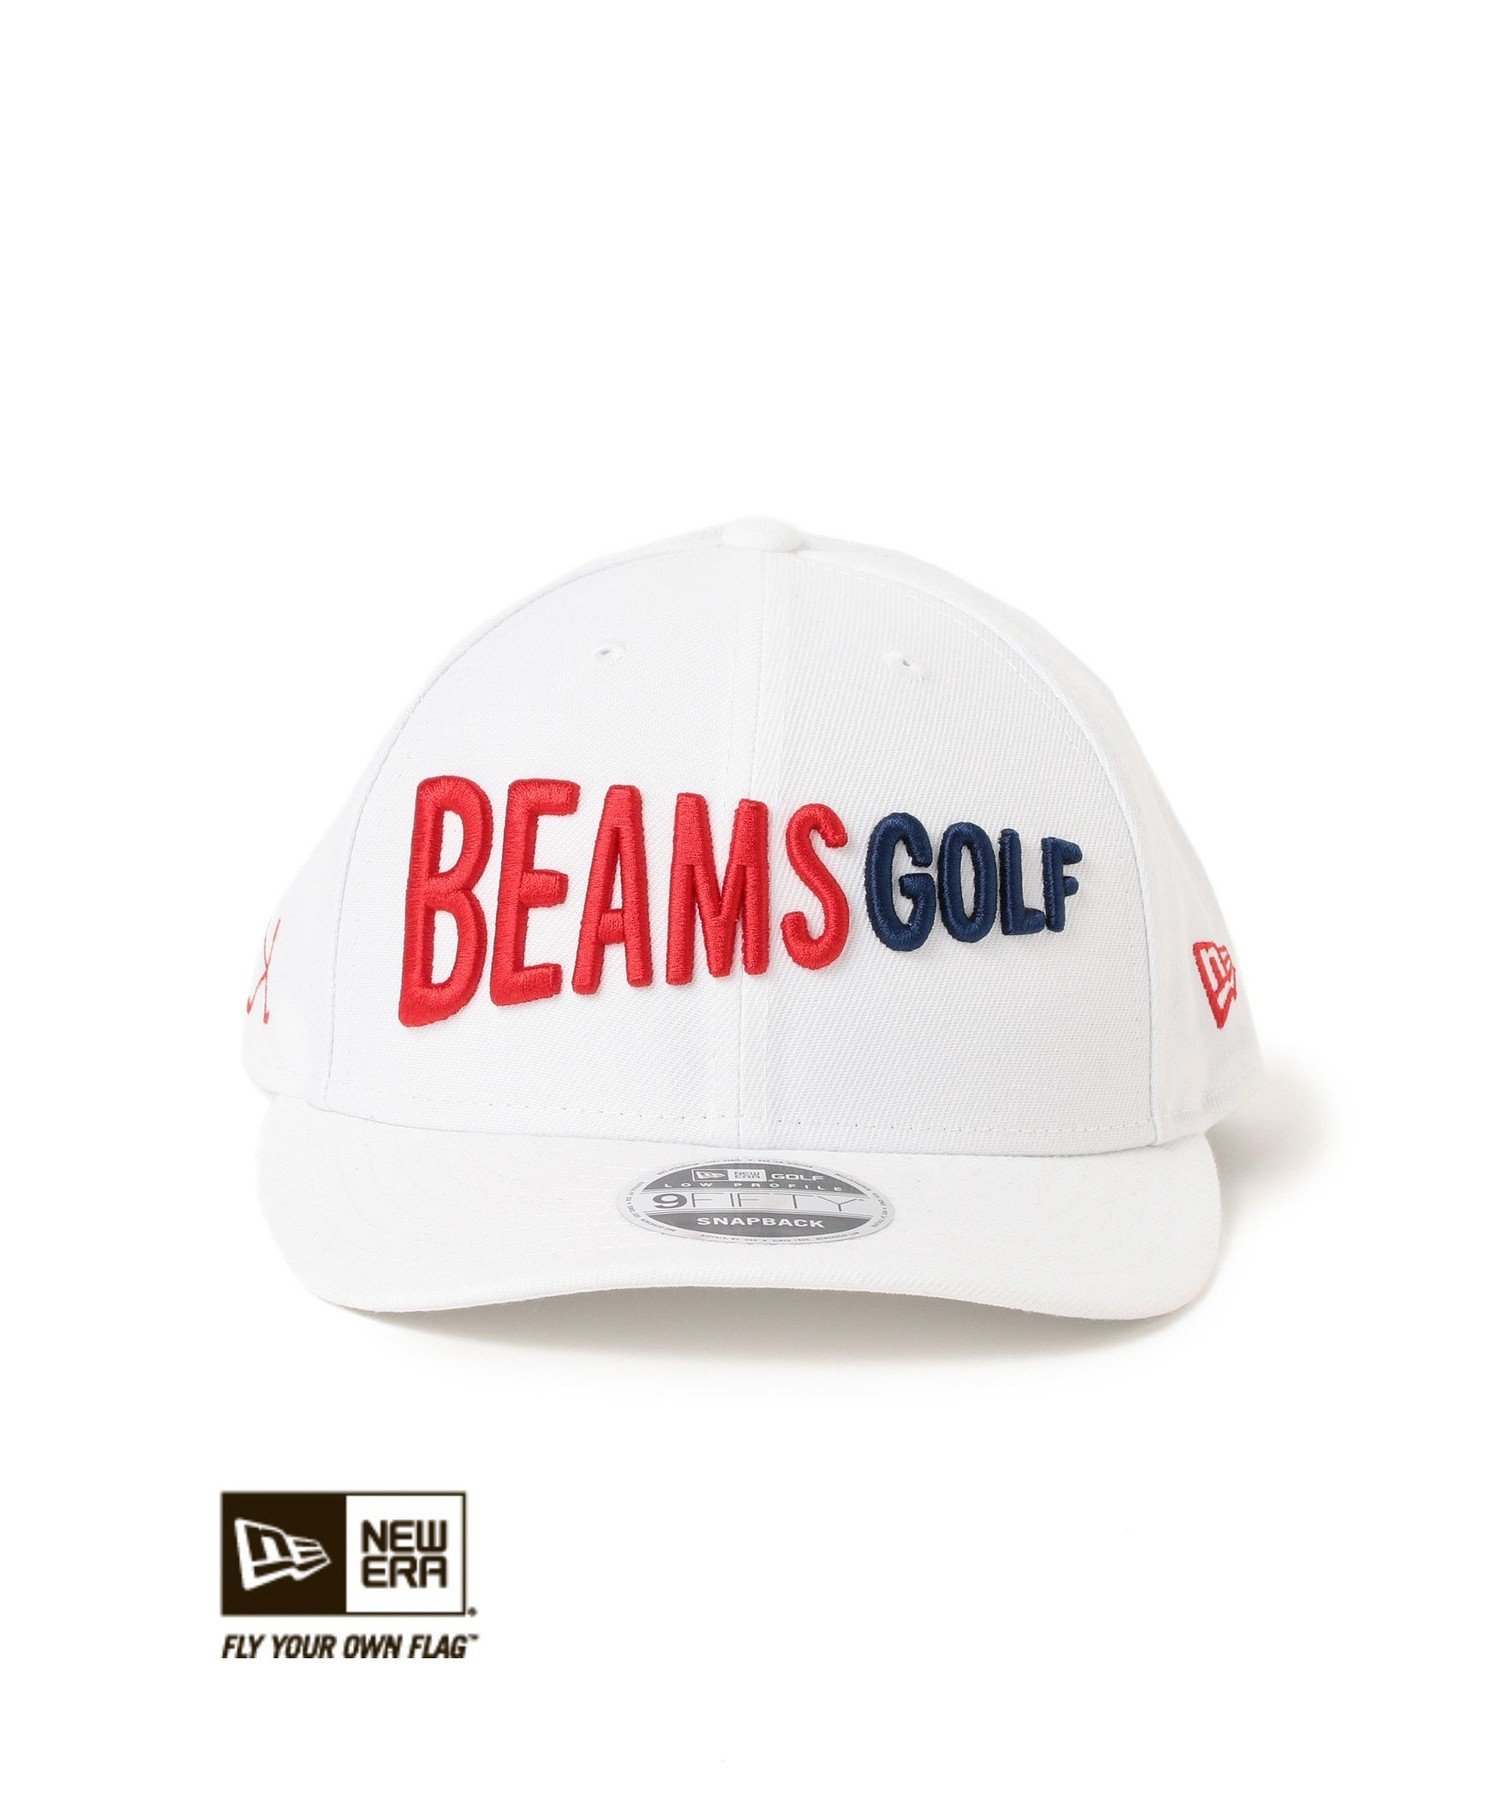 BEAMS GOLF NEW ERA BEAMS GOLF / 9FIFTY LP フラッグロゴ キャップ ビームス ゴルフ 帽子 キャップ ホワイト ブラック ネイビー【送料無料】